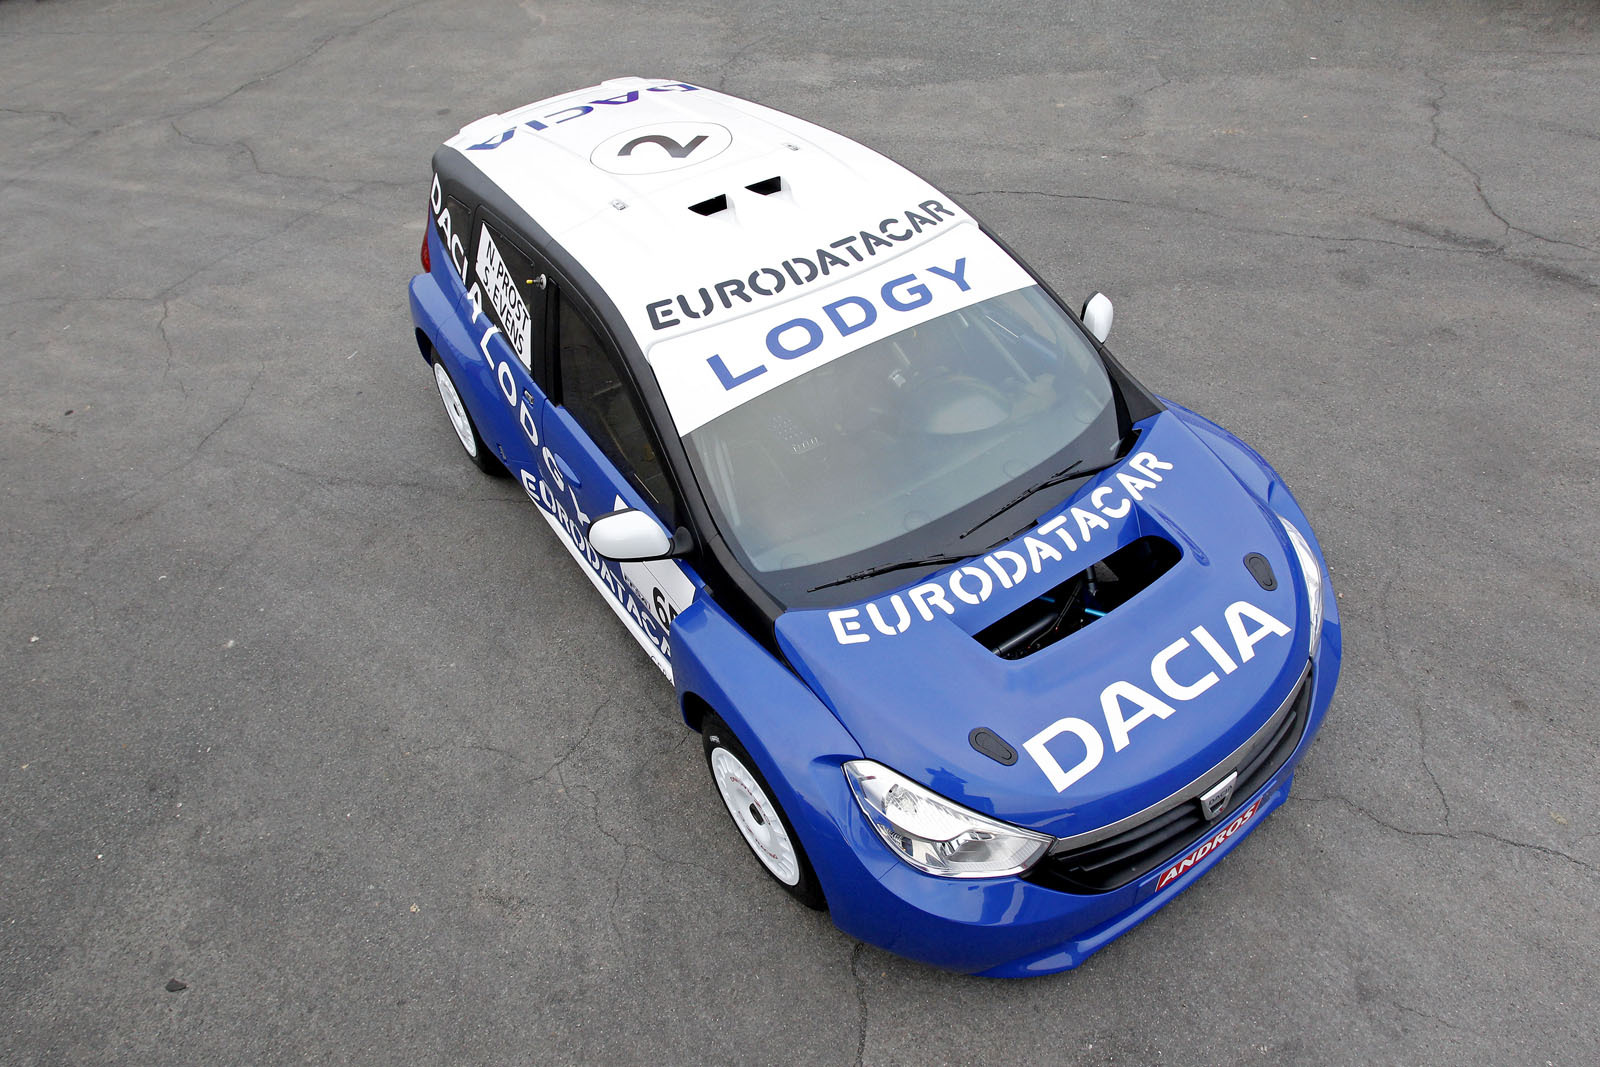 Partea frontala a lui Dacia Lodgy ne arata noua imagine de marca, pe care o vom vedea si pe Logan 2, cel mai probabil